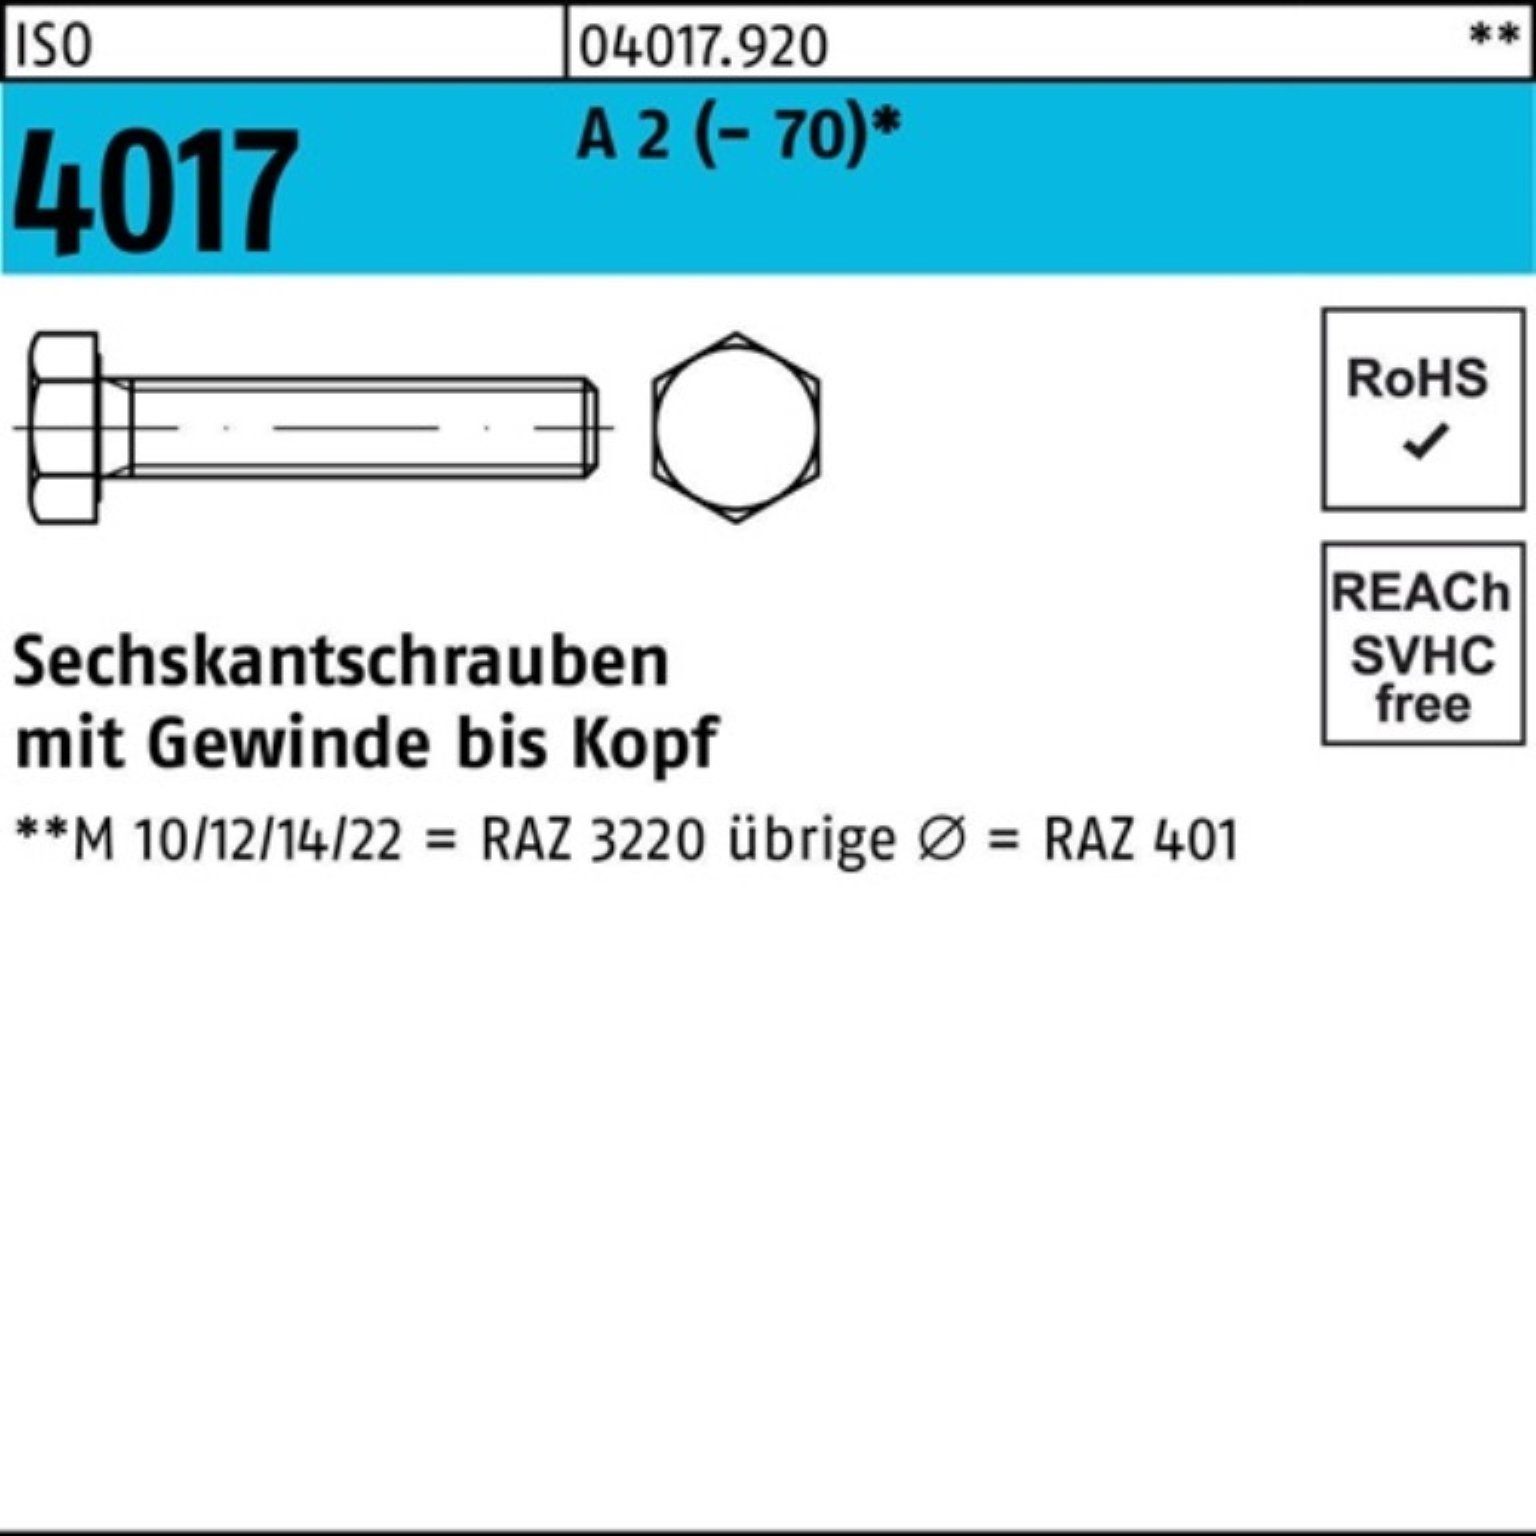 Stück Bufab A (70) Sechskantschraube Pack 40 100er 20 4017 M24x Sechskantschraube ISO VG 2